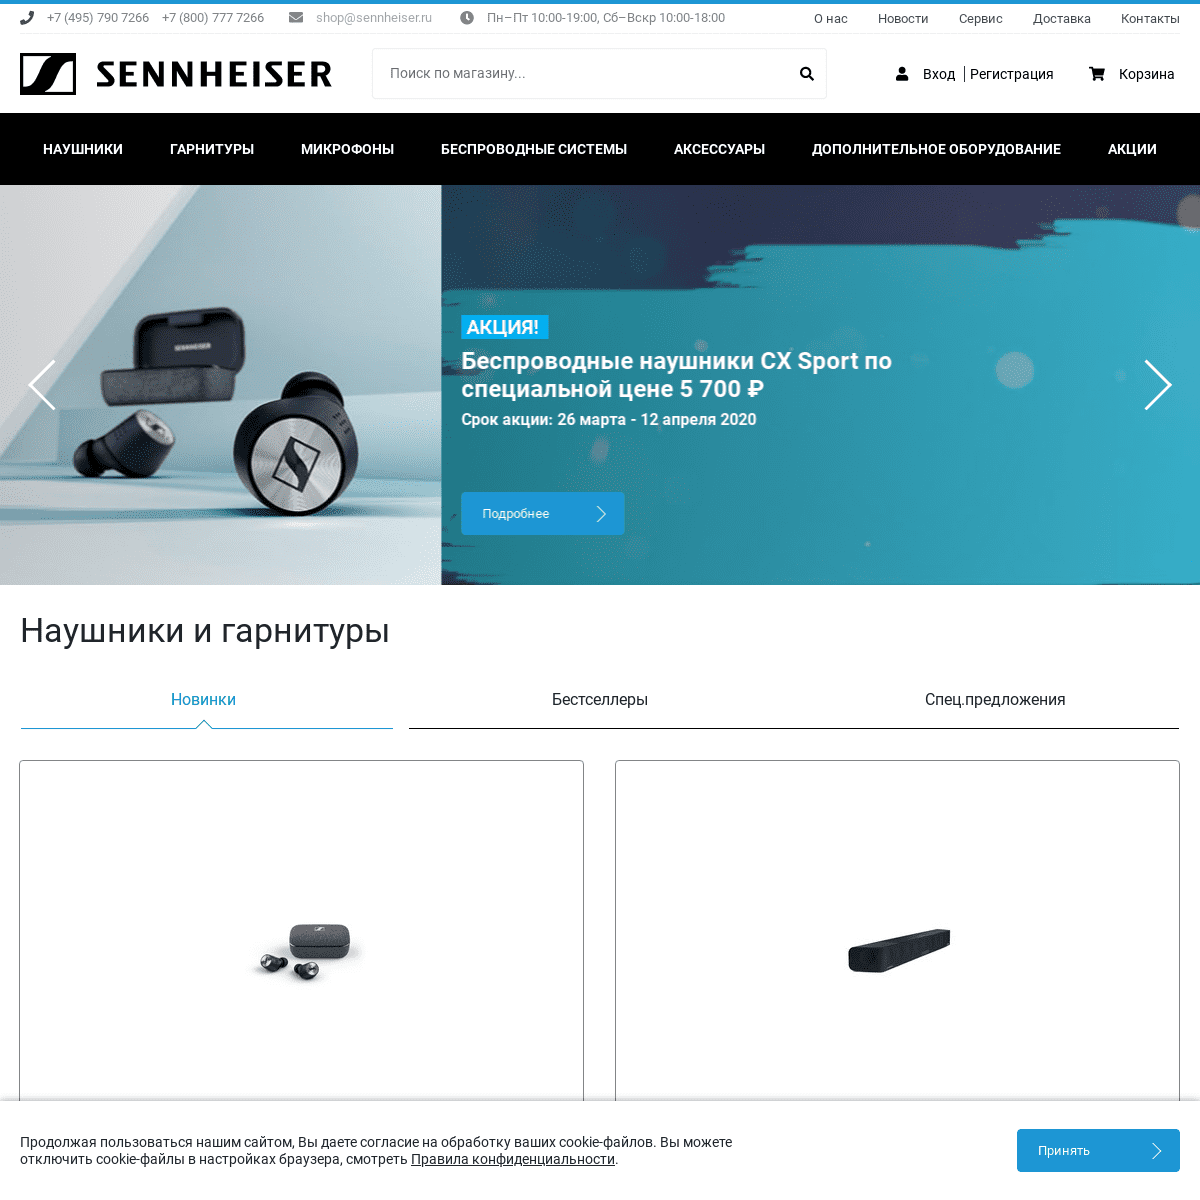 A complete backup of sennheiser.ru